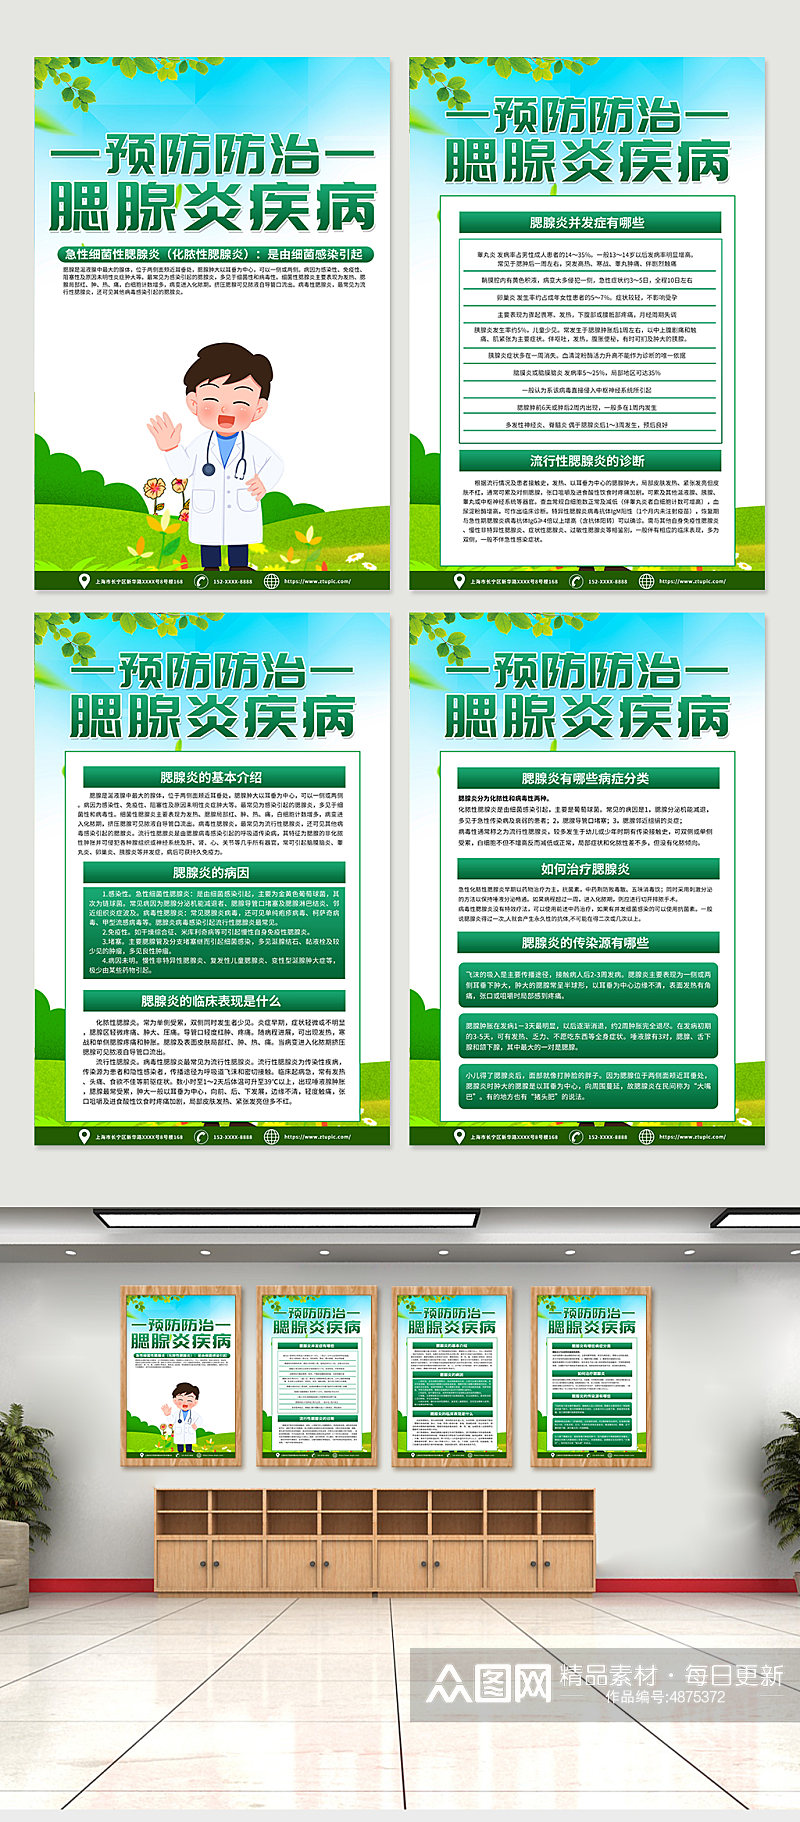 绿色腮腺炎防治知识医疗宣传海报素材